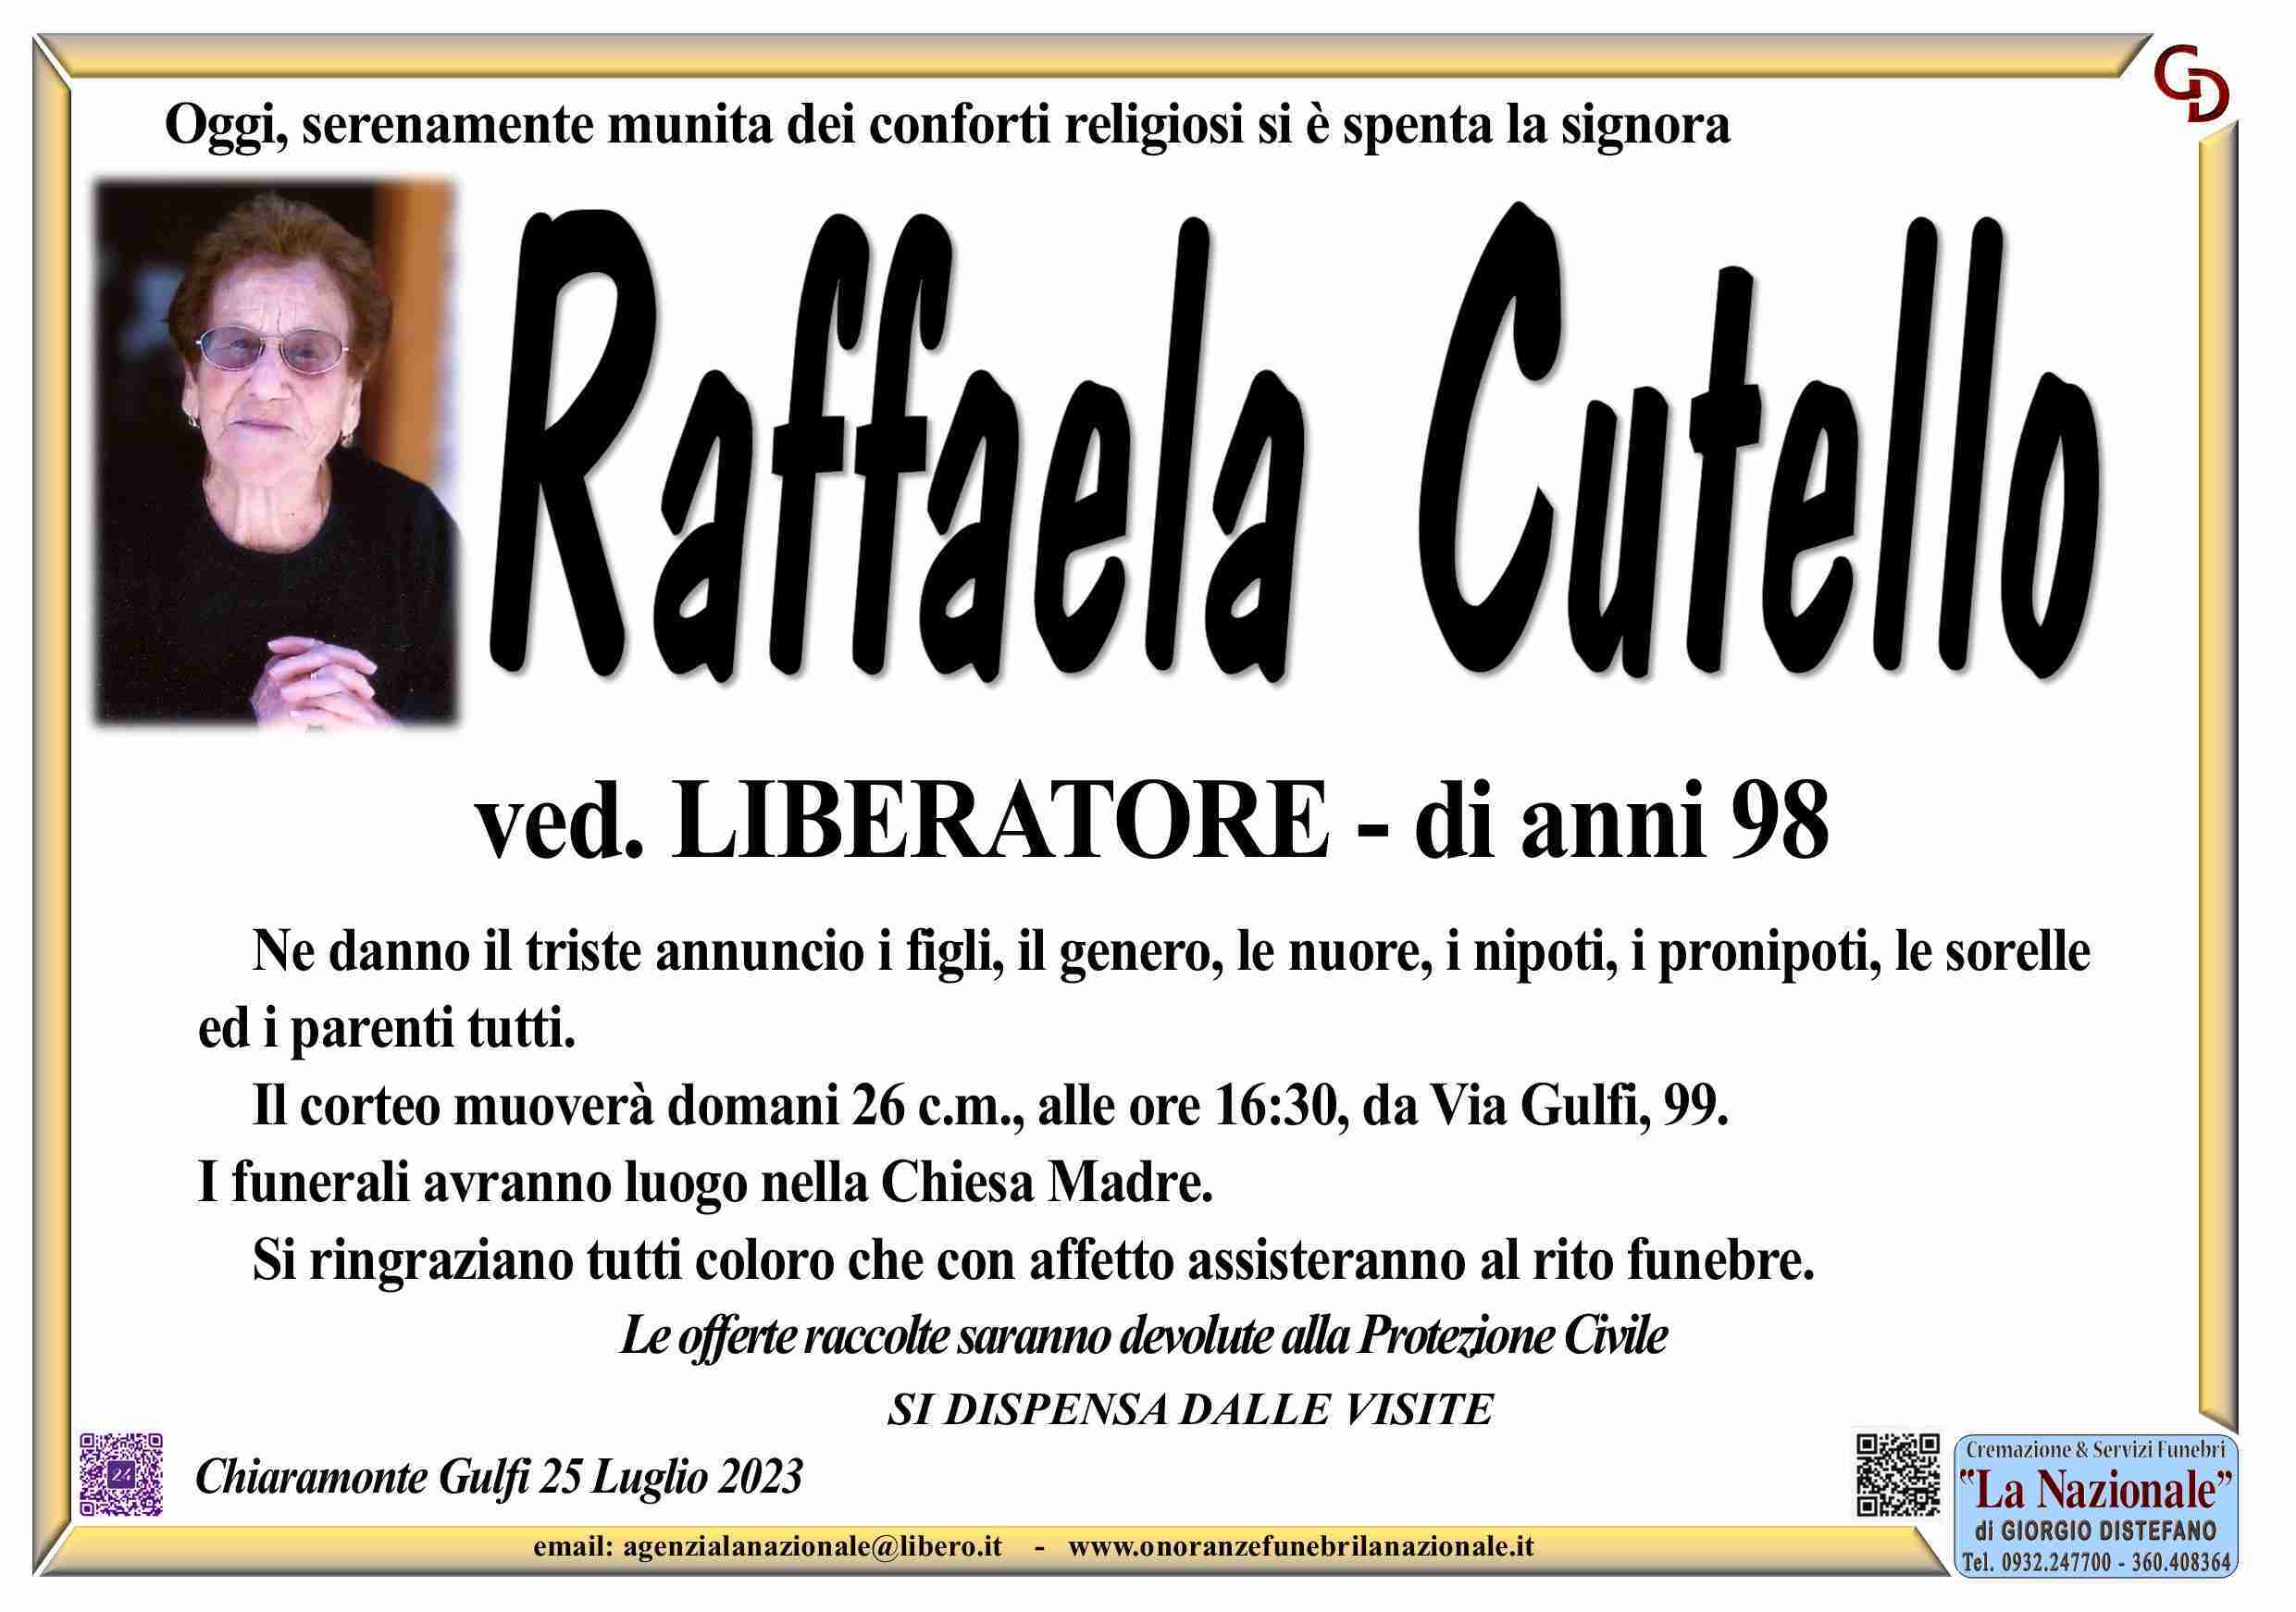 Raffaela Cutello